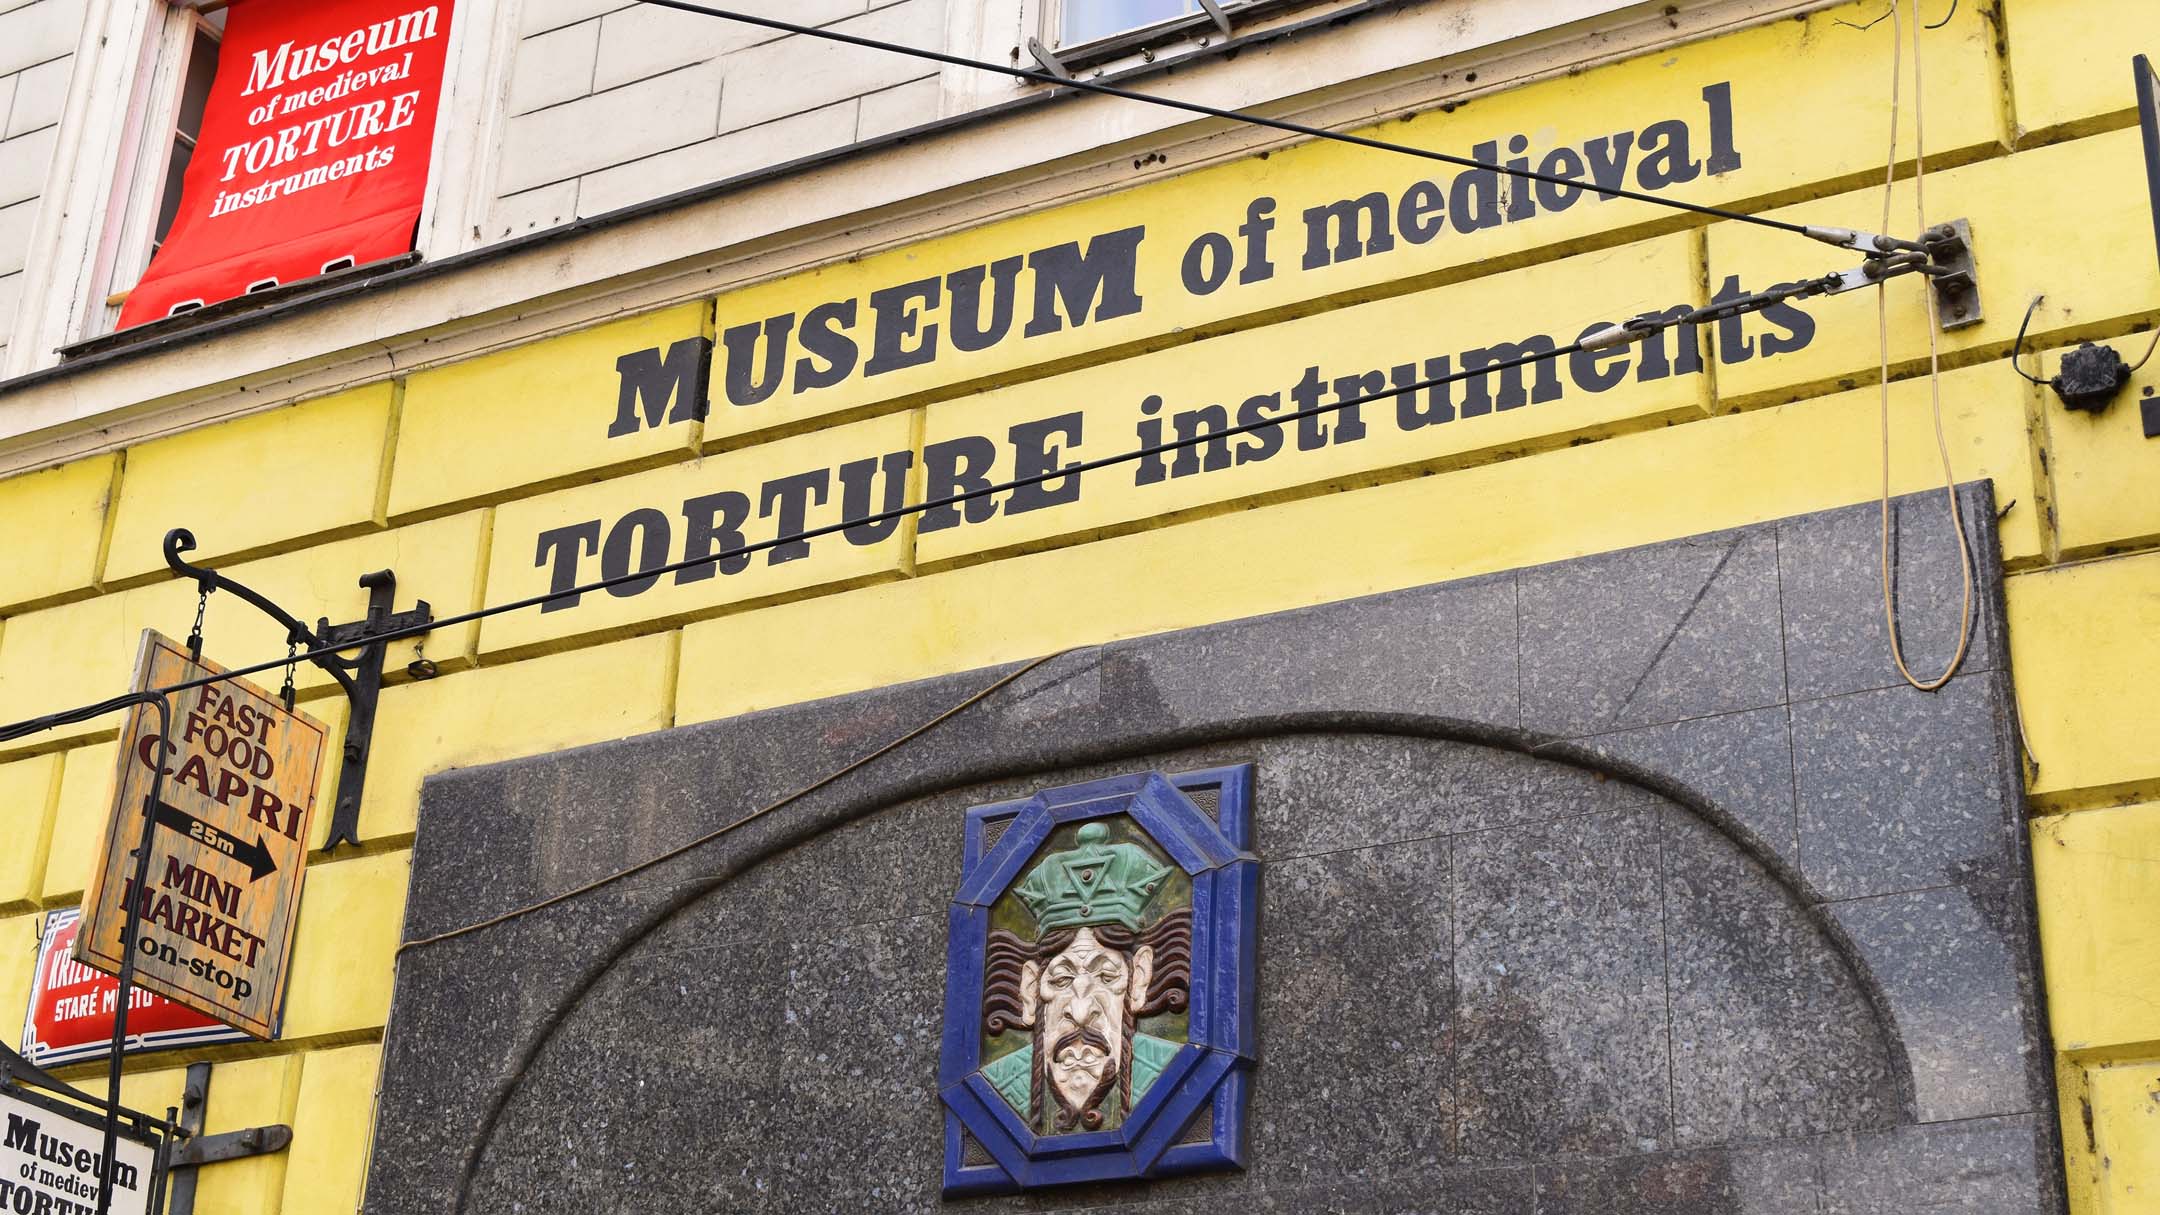 Musée des instruments de torture médiévaux ( Museum of Medieval Torture Instruments )